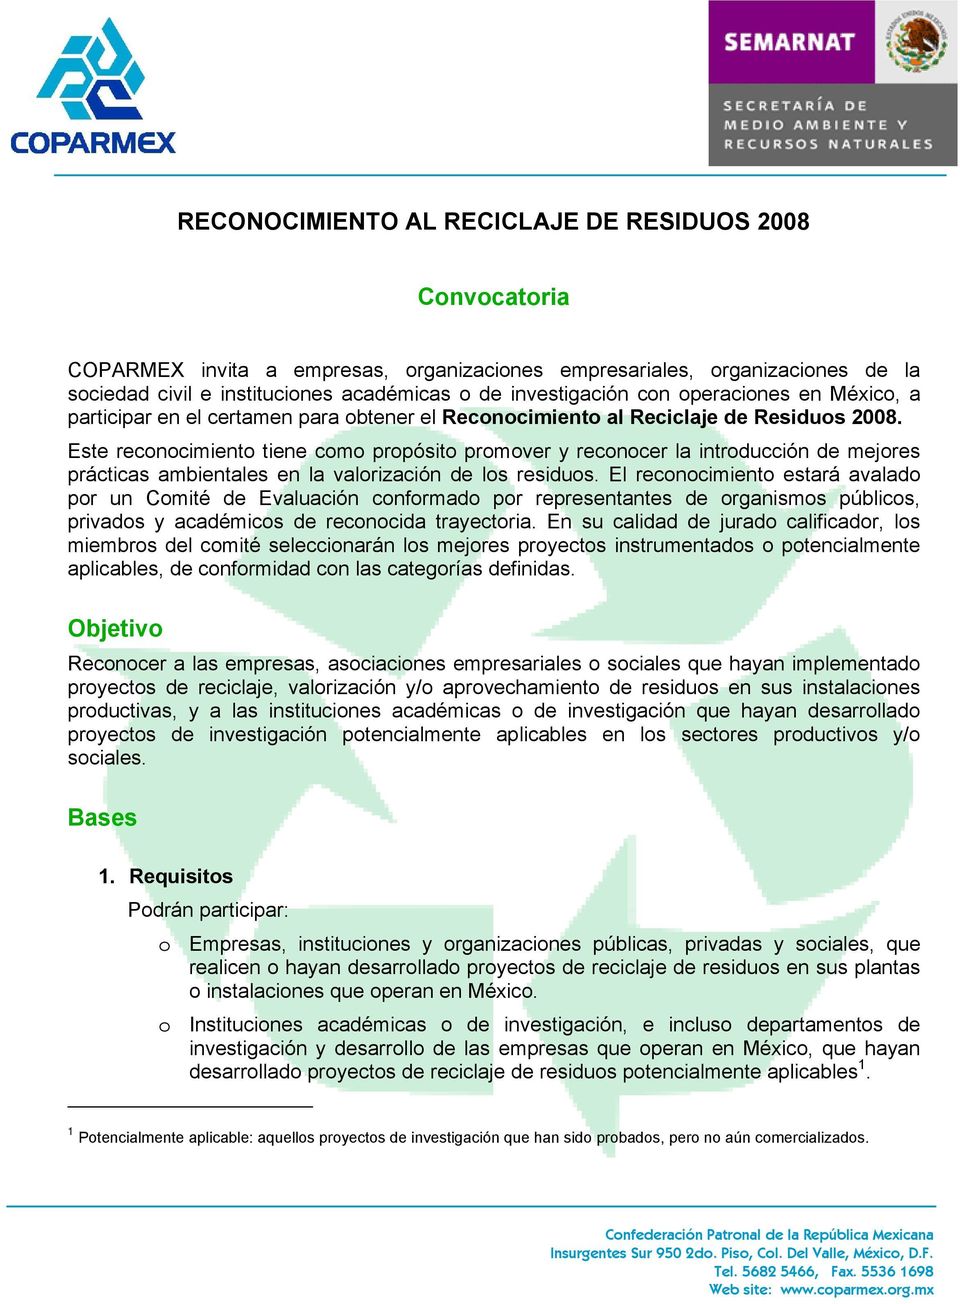 Este reconocimiento tiene como propósito promover y reconocer la introducción de mejores prácticas ambientales en la valorización de los residuos.